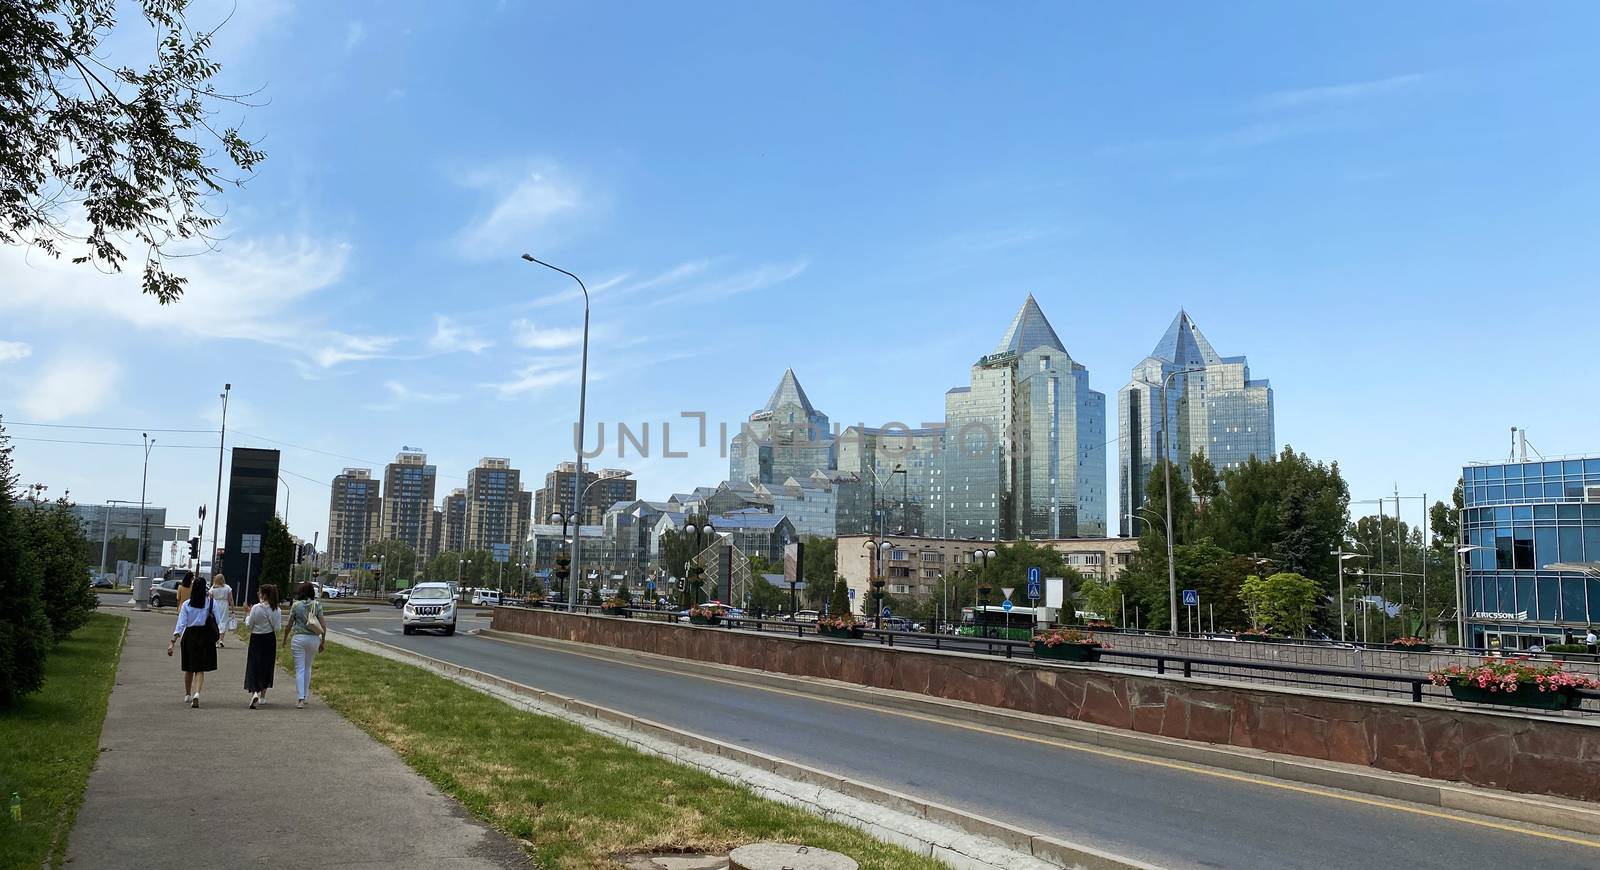 Almaty, Kazakhstan - June 1, 2020: View from Al-Farabi avenue, it is one of the main roads in the city of Almaty